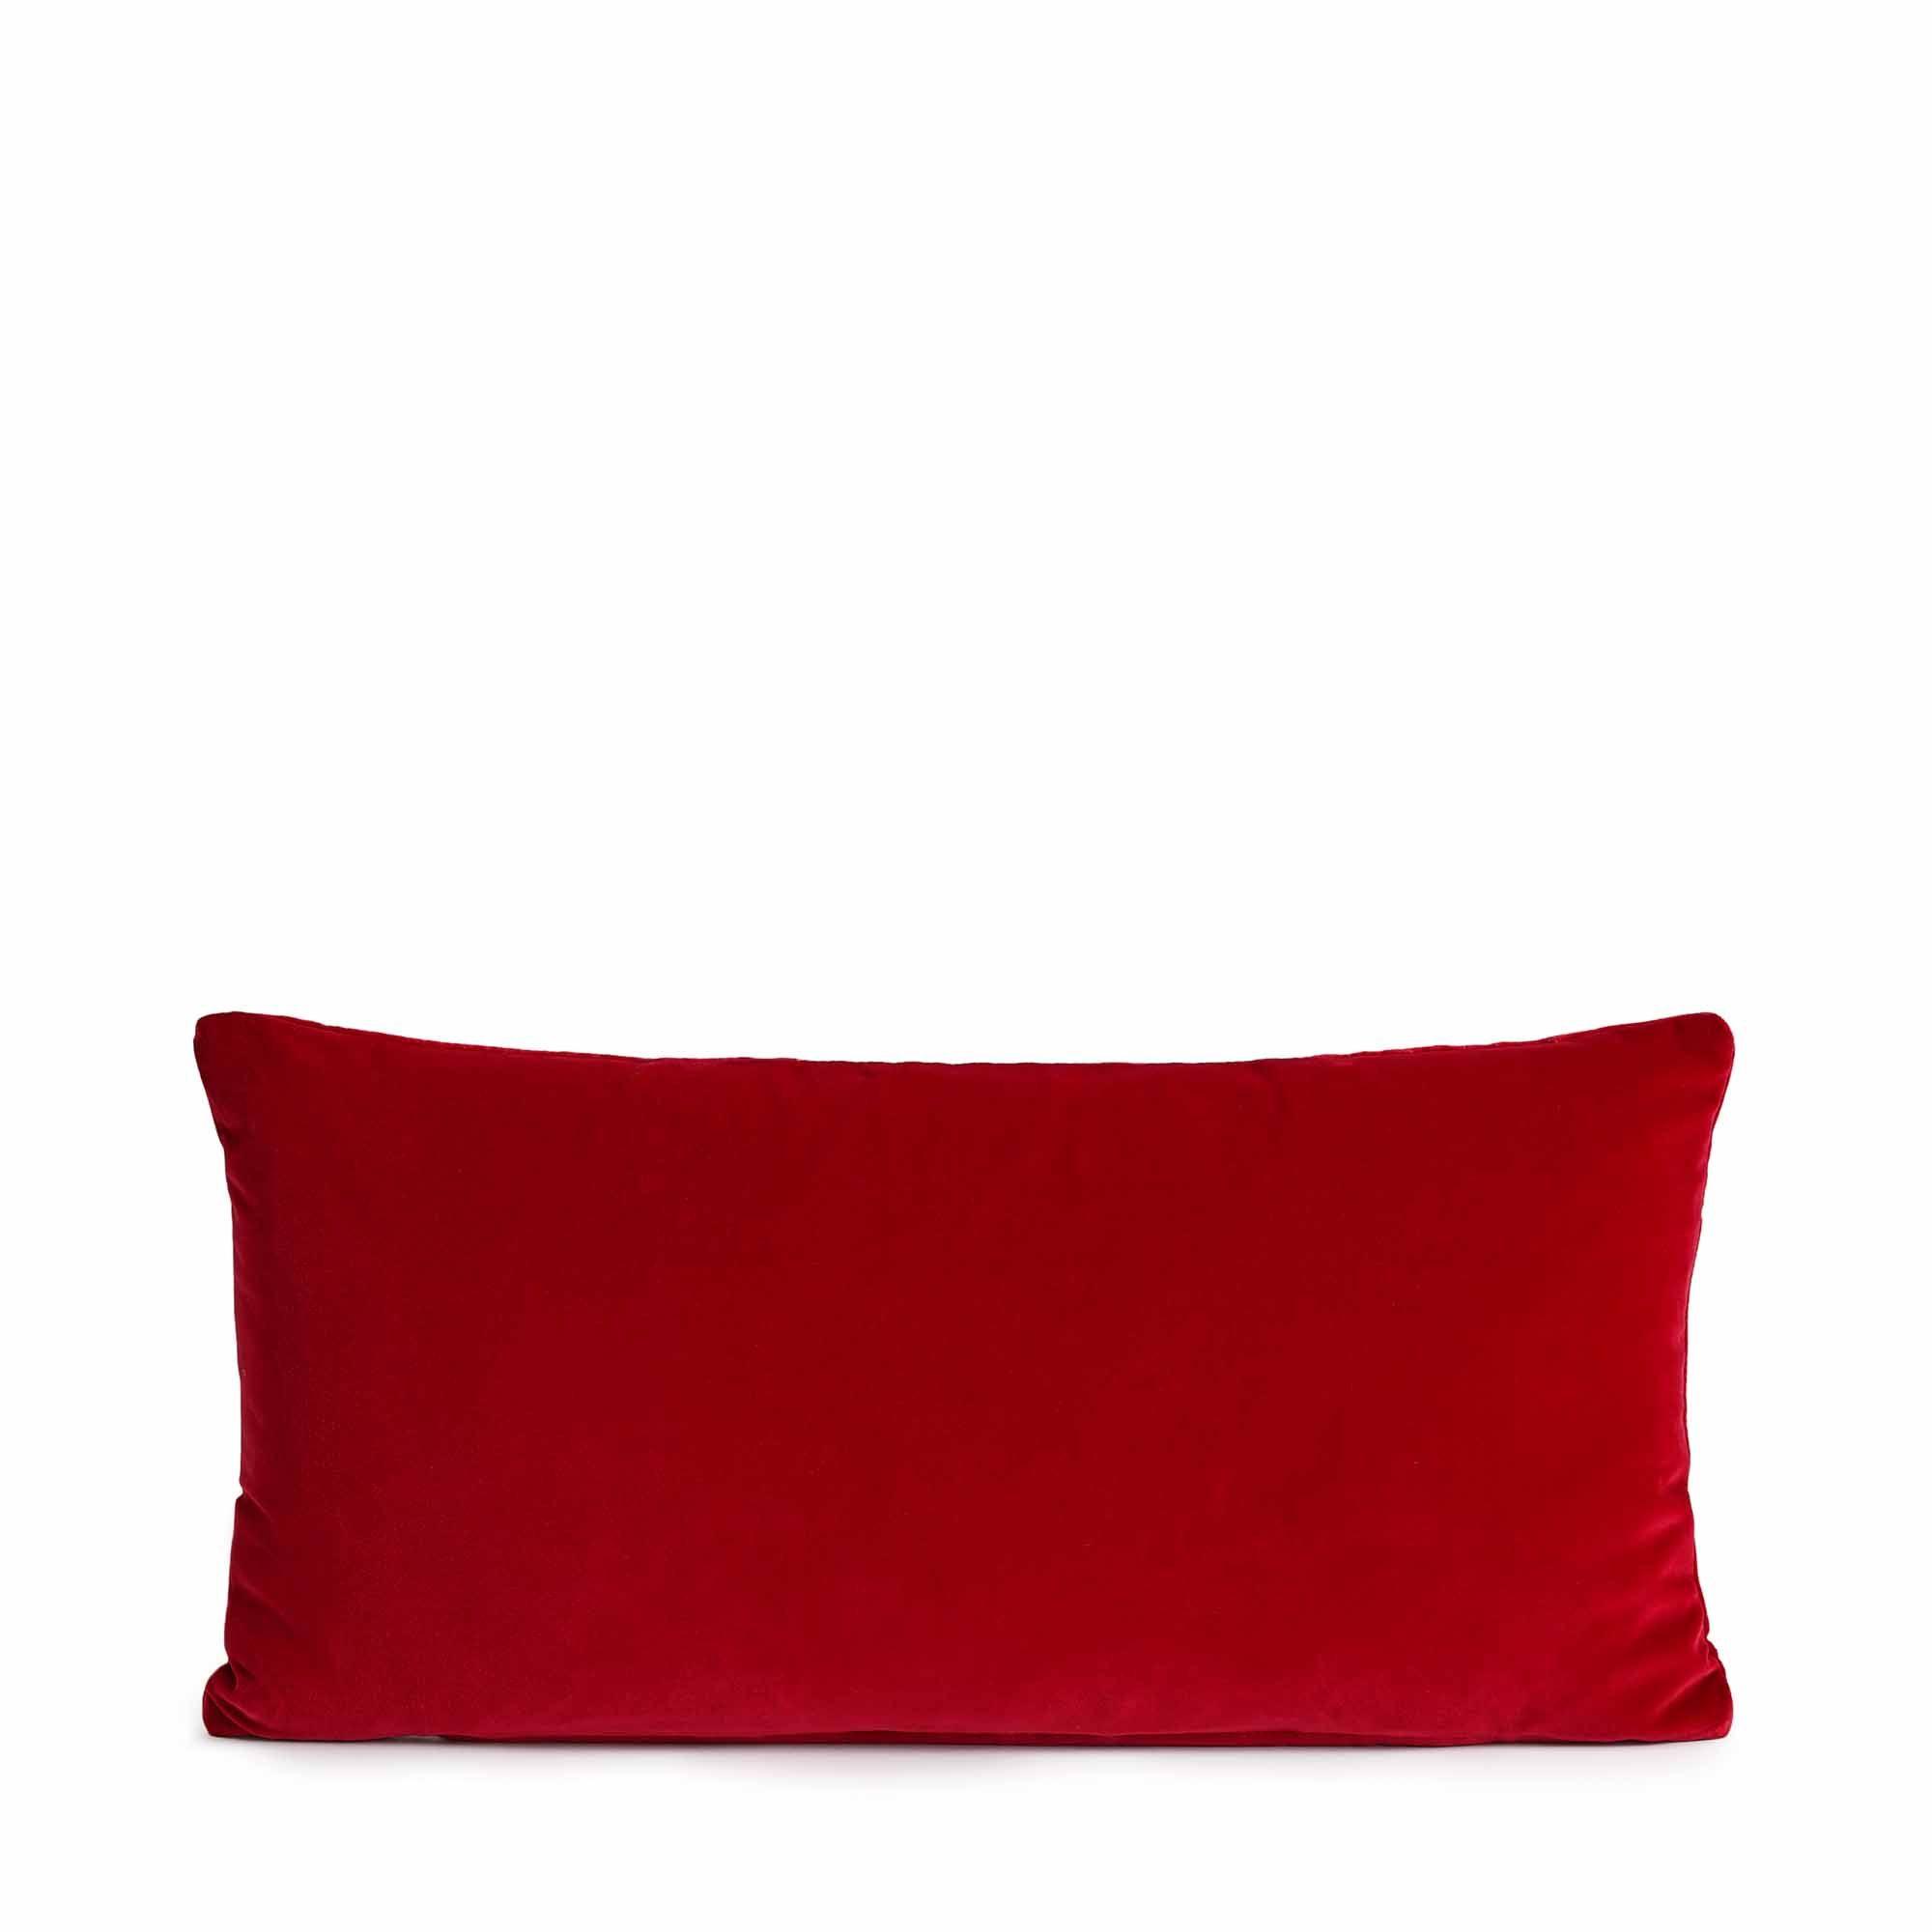 Oblong Red Logo - Monroe Oblong Cushion, Red $89.00